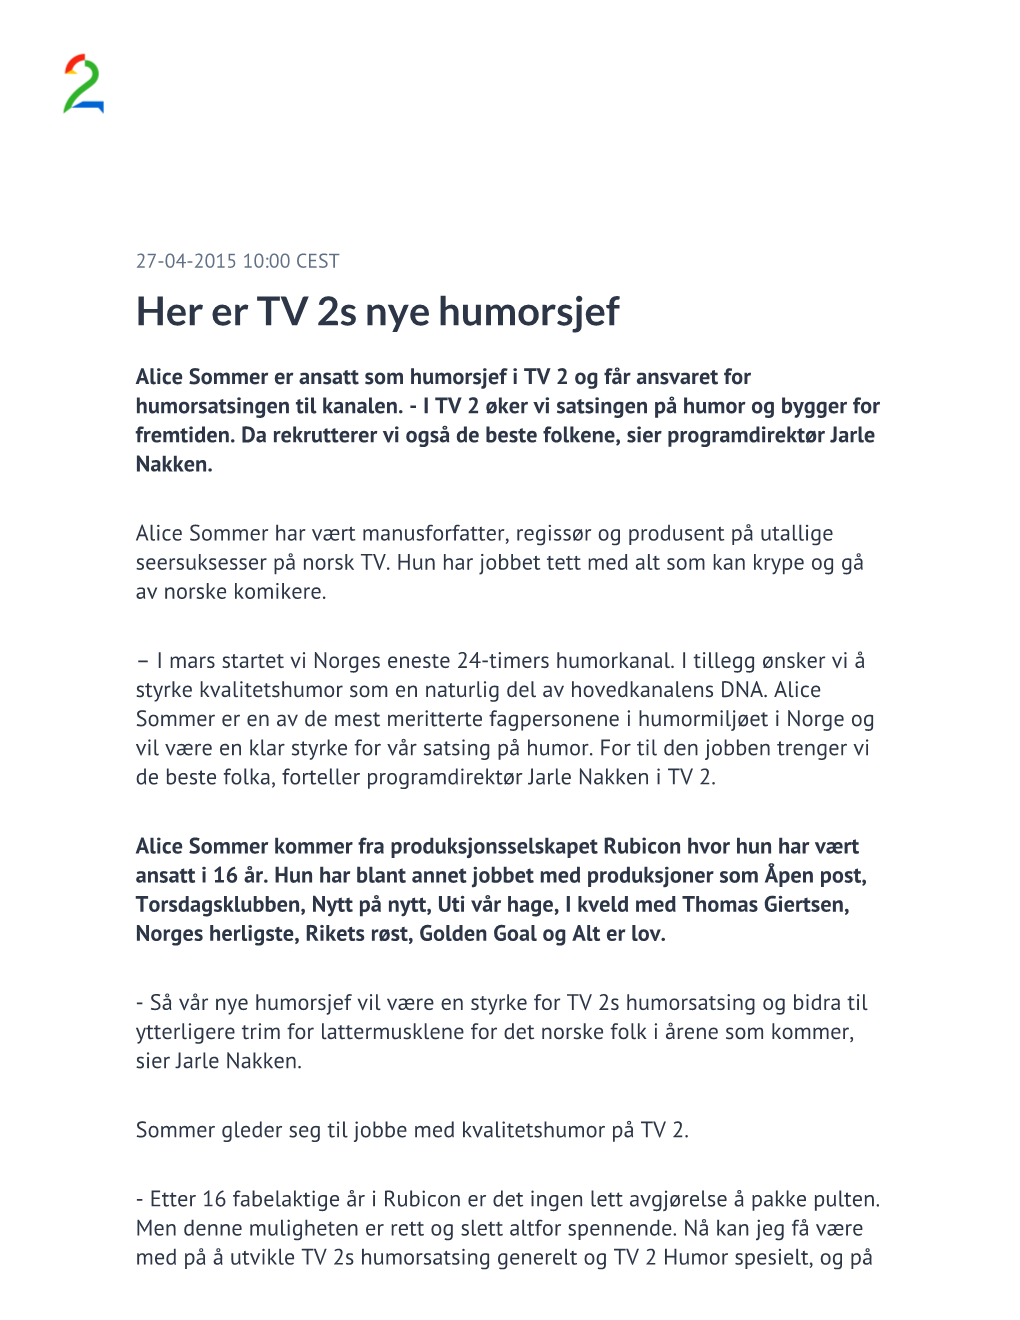 Her Er TV 2S Nye Humorsjef